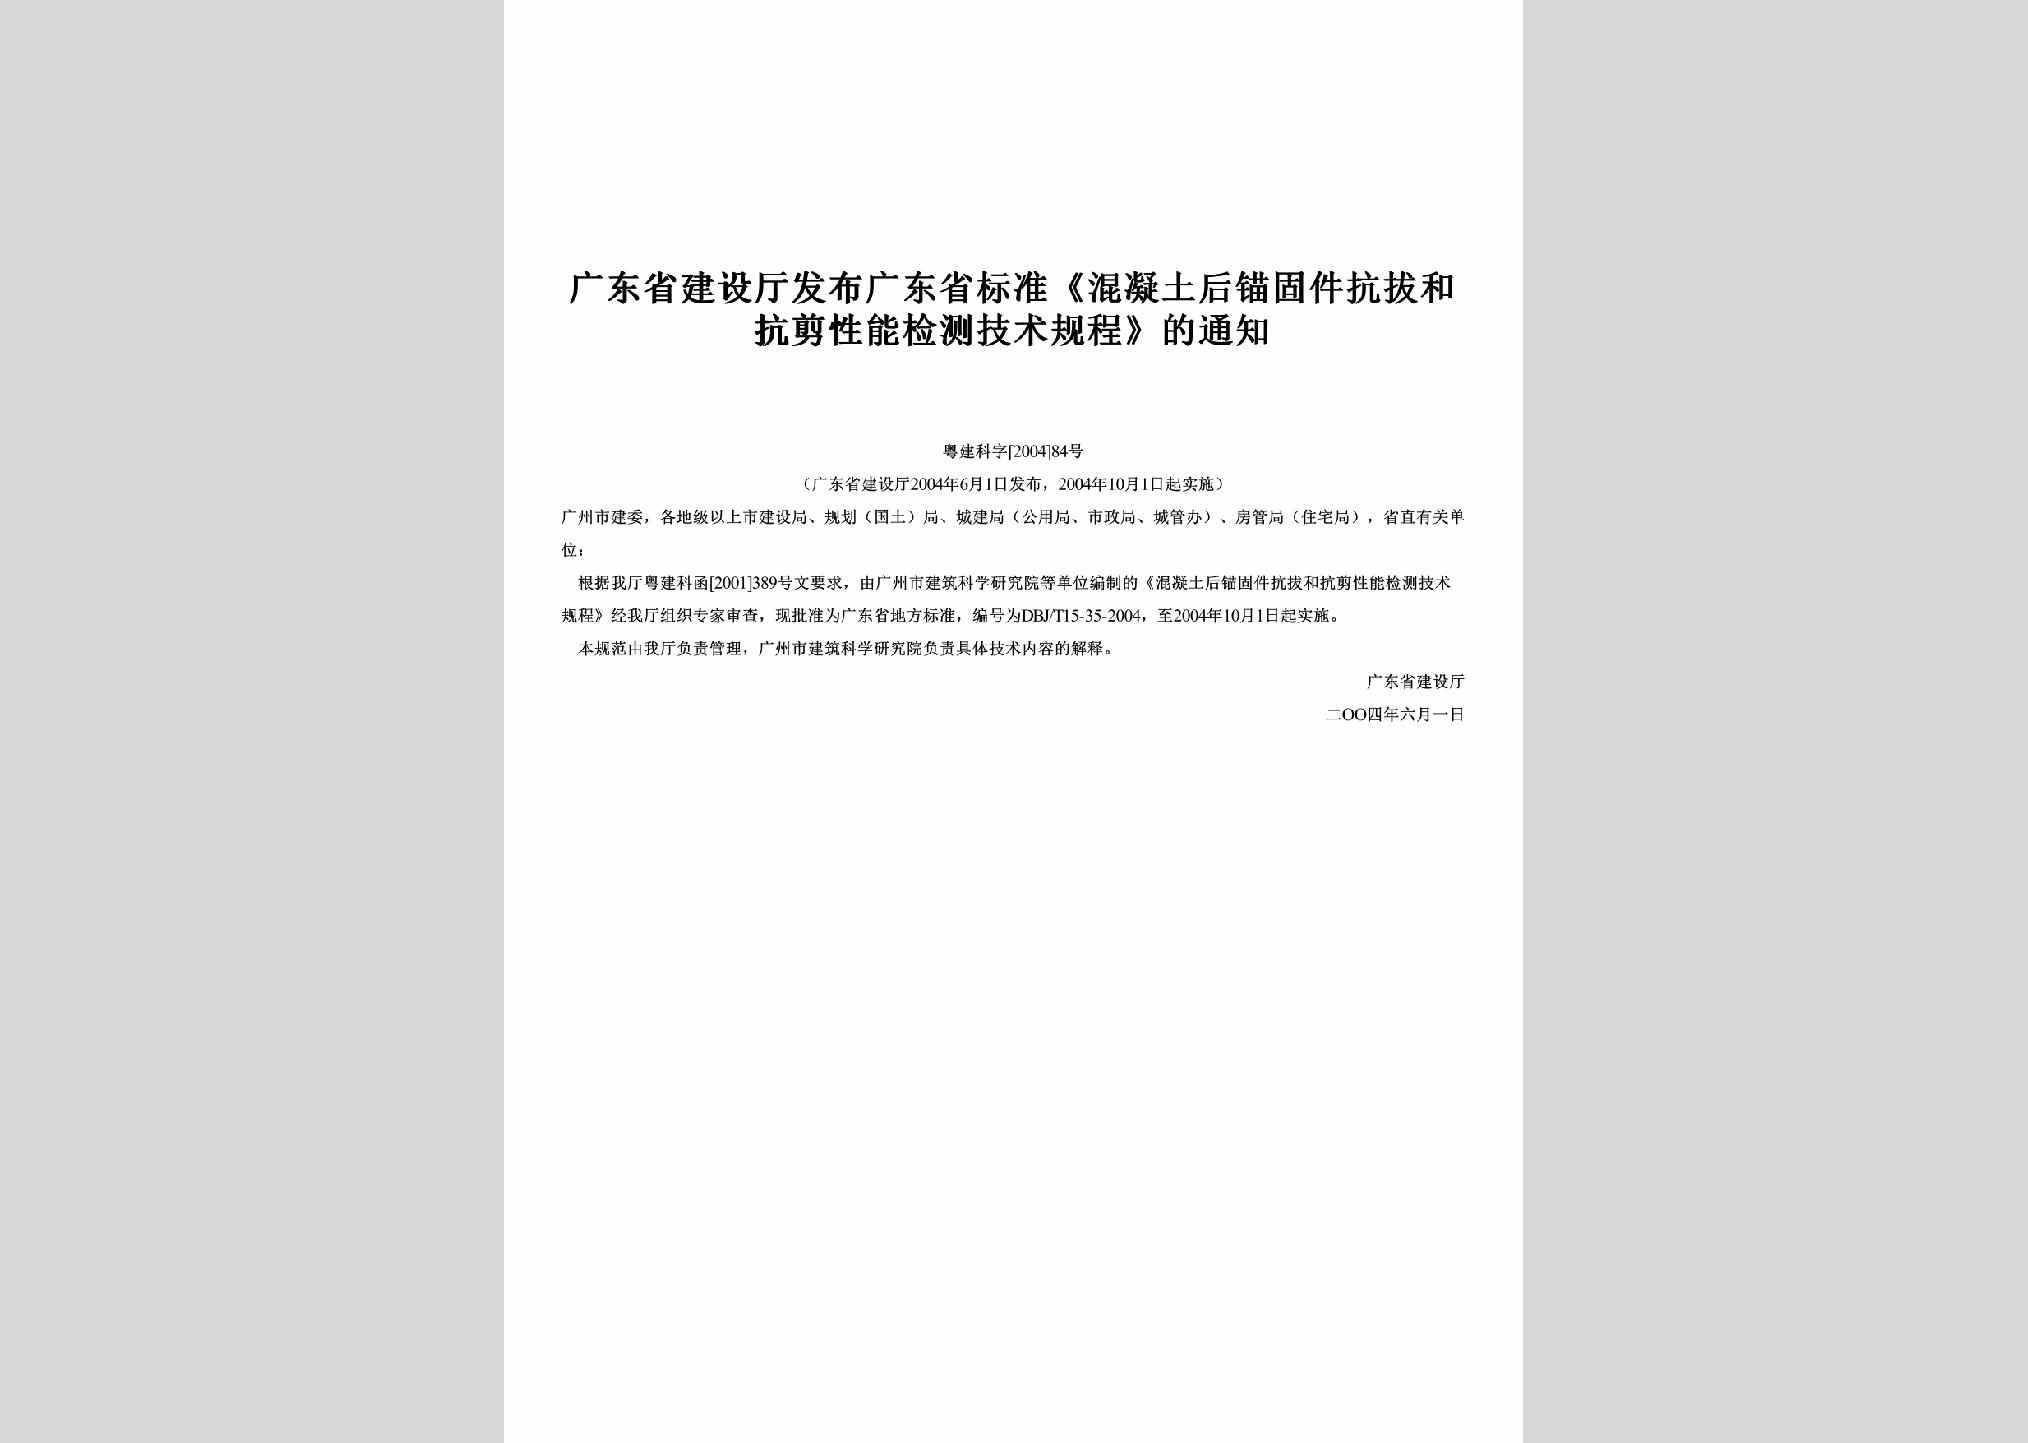 粤建科字[2004]84号：发布广东省标准《混凝土后锚固件抗拔和抗剪性能检测技术规程》的通知